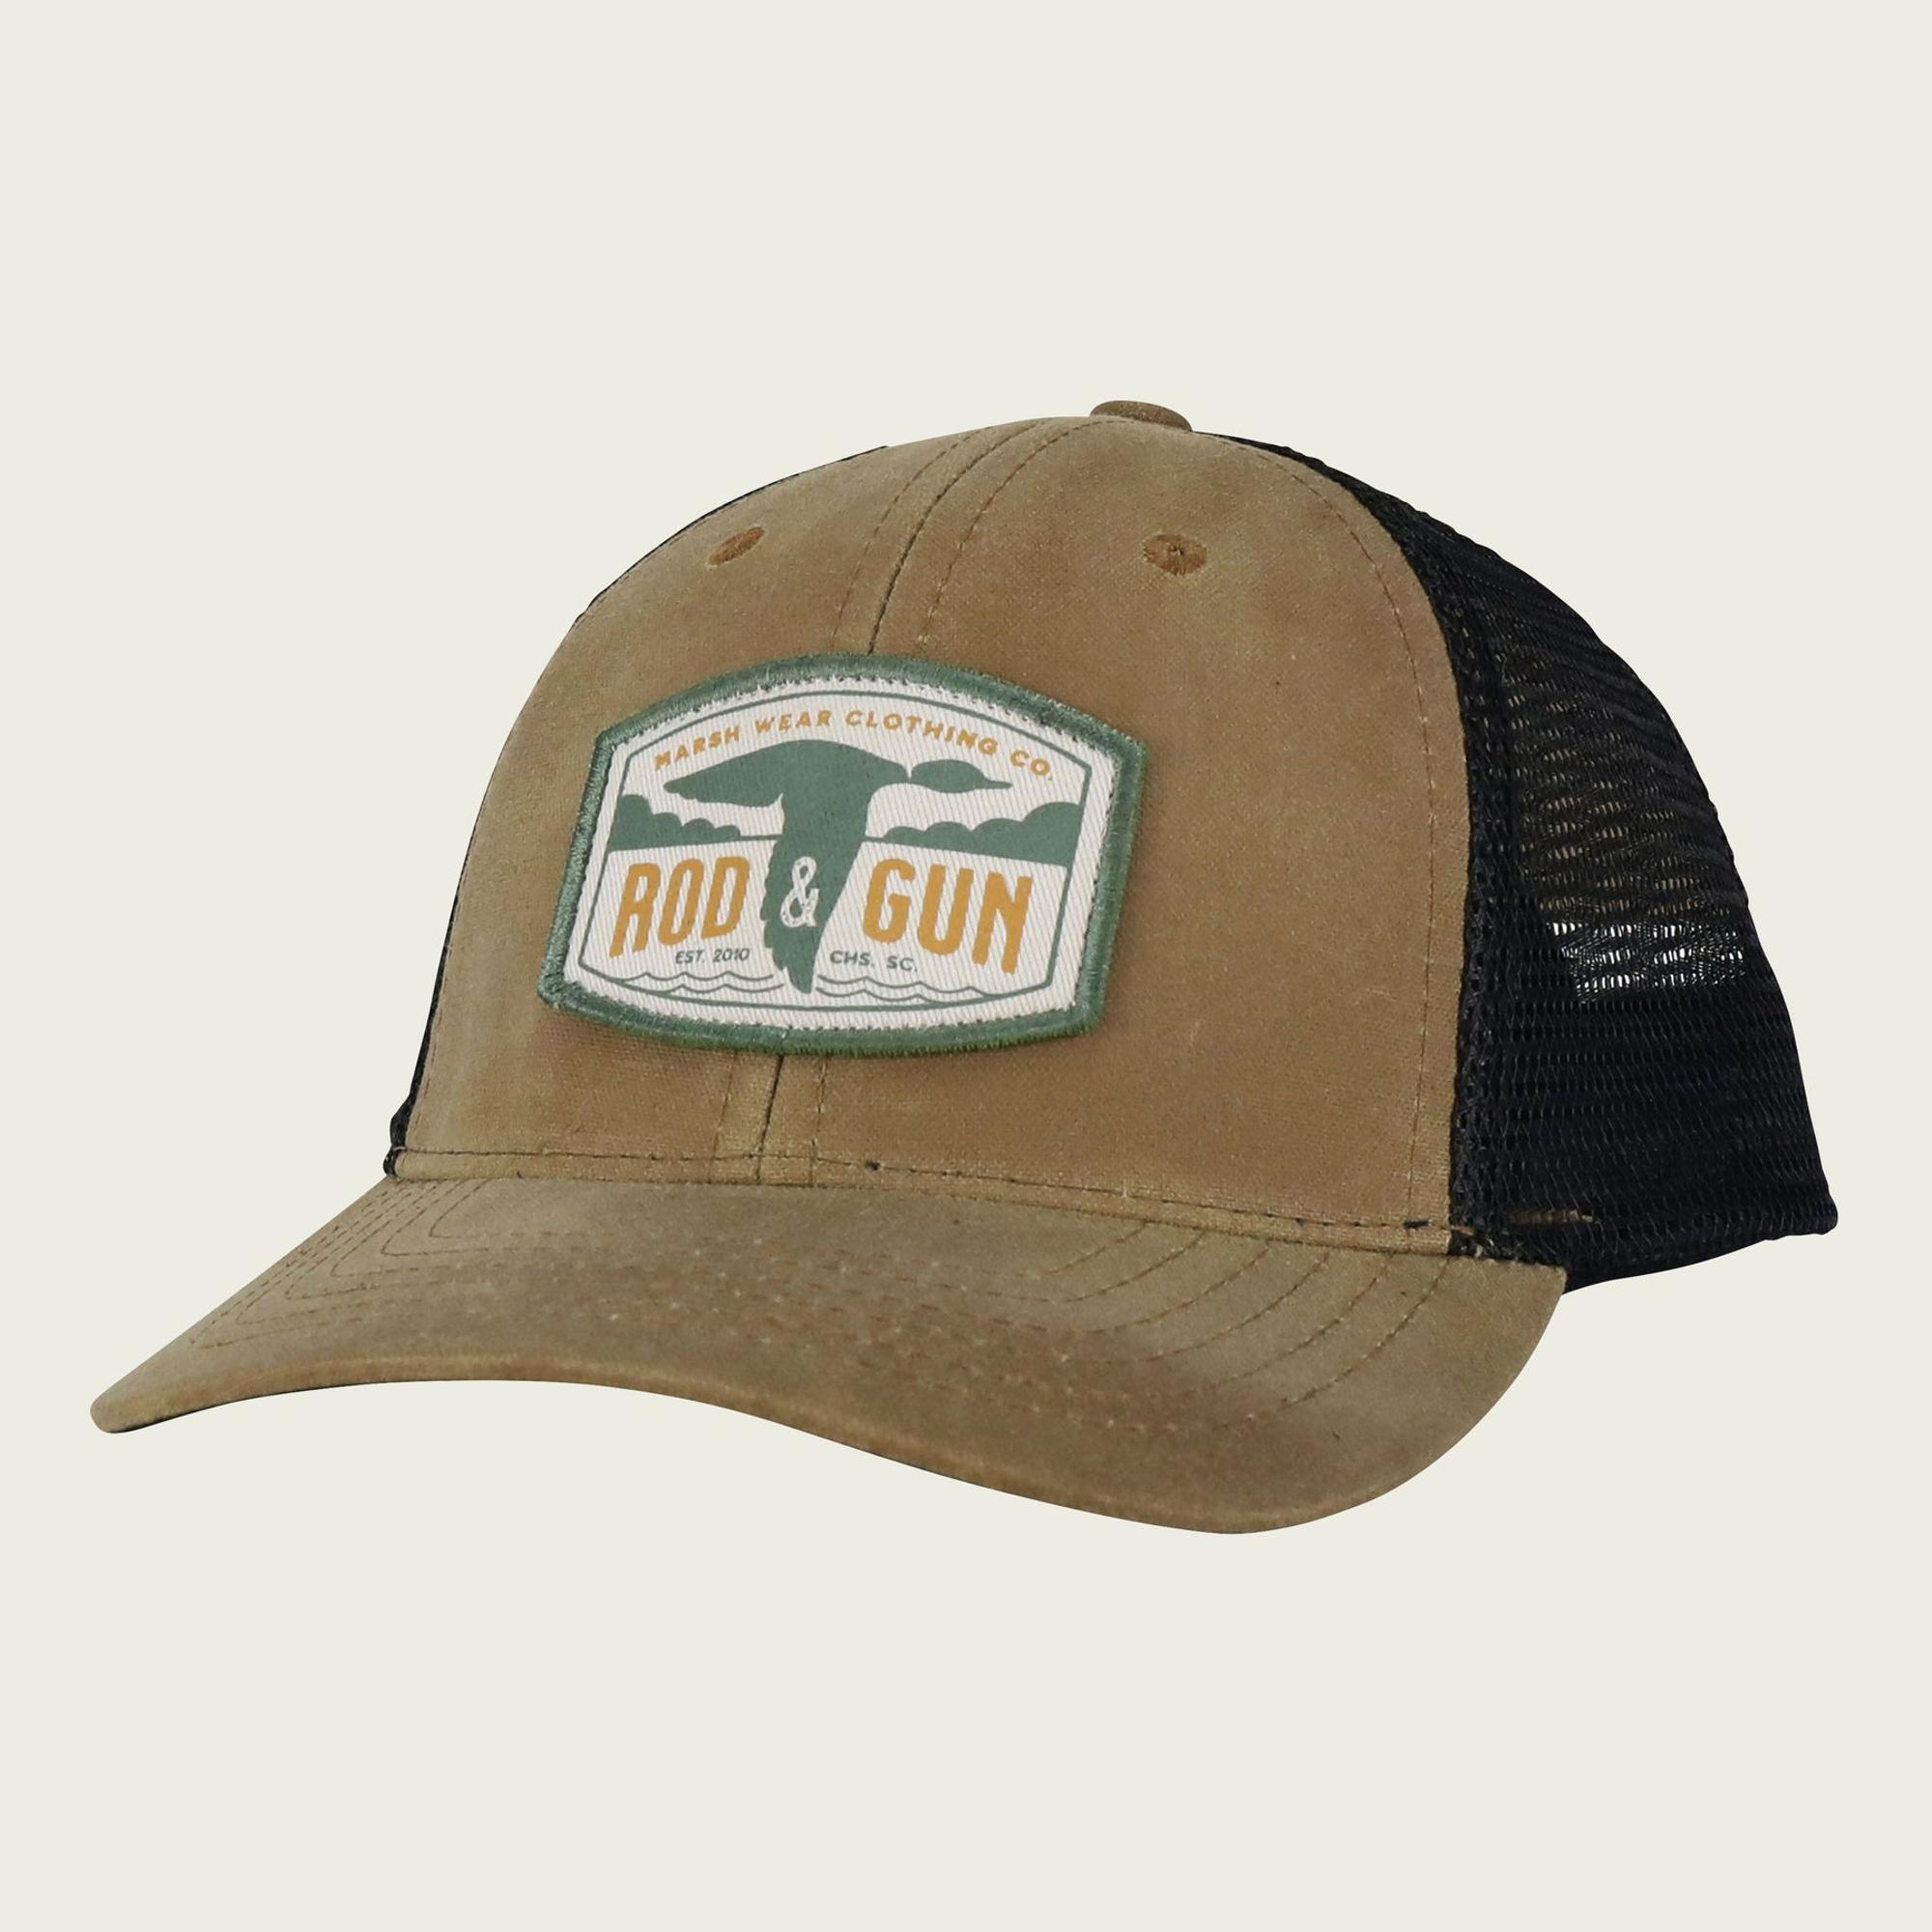 Rod & Gun Trucker Hat